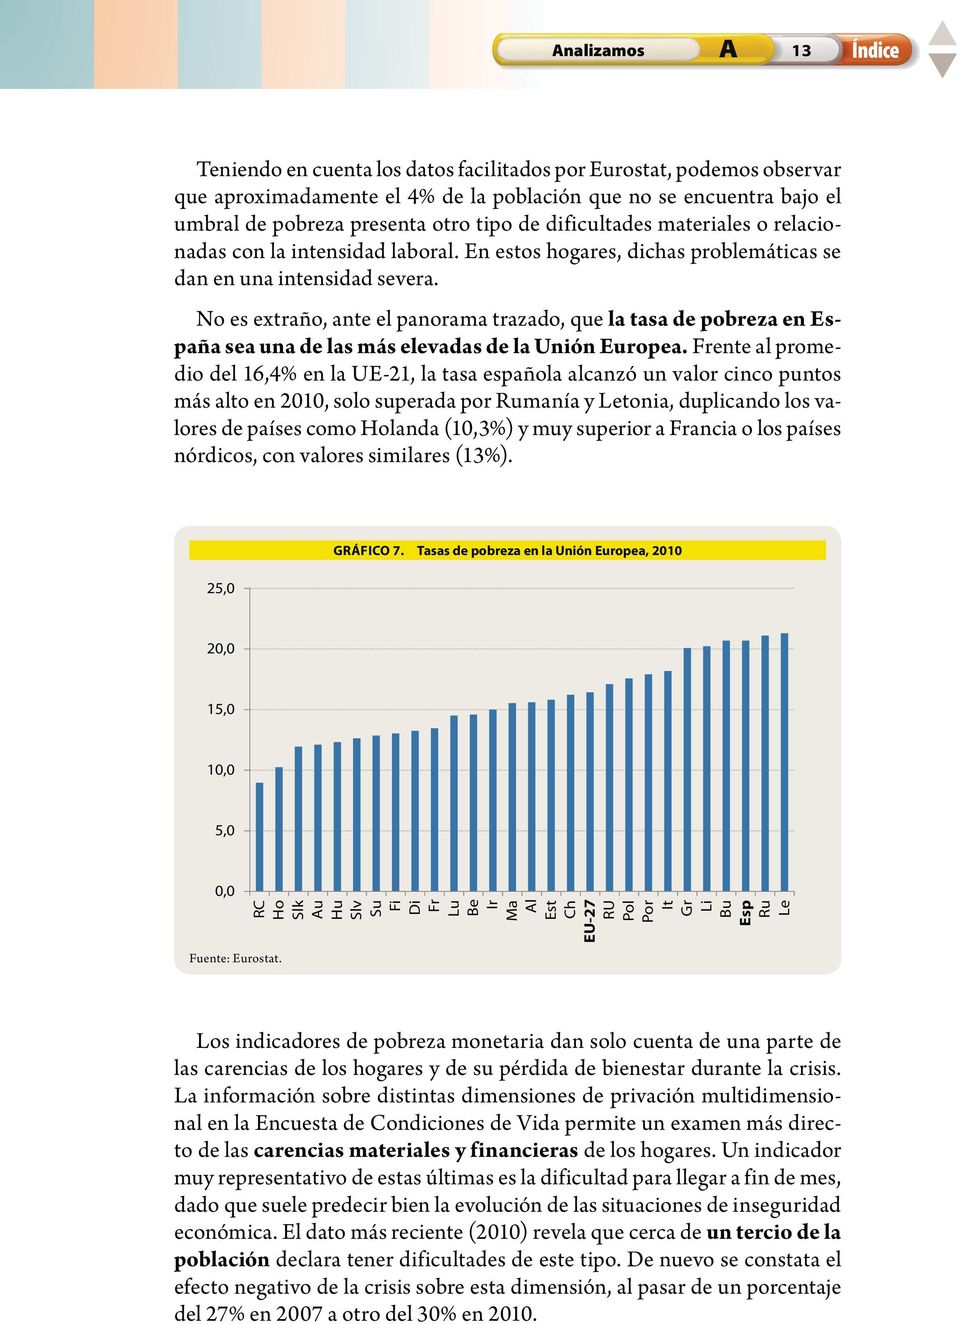 No es extraño, ante el panorama trazado, que la tasa de pobreza en España sea una de las más elevadas de la Unión Europea.